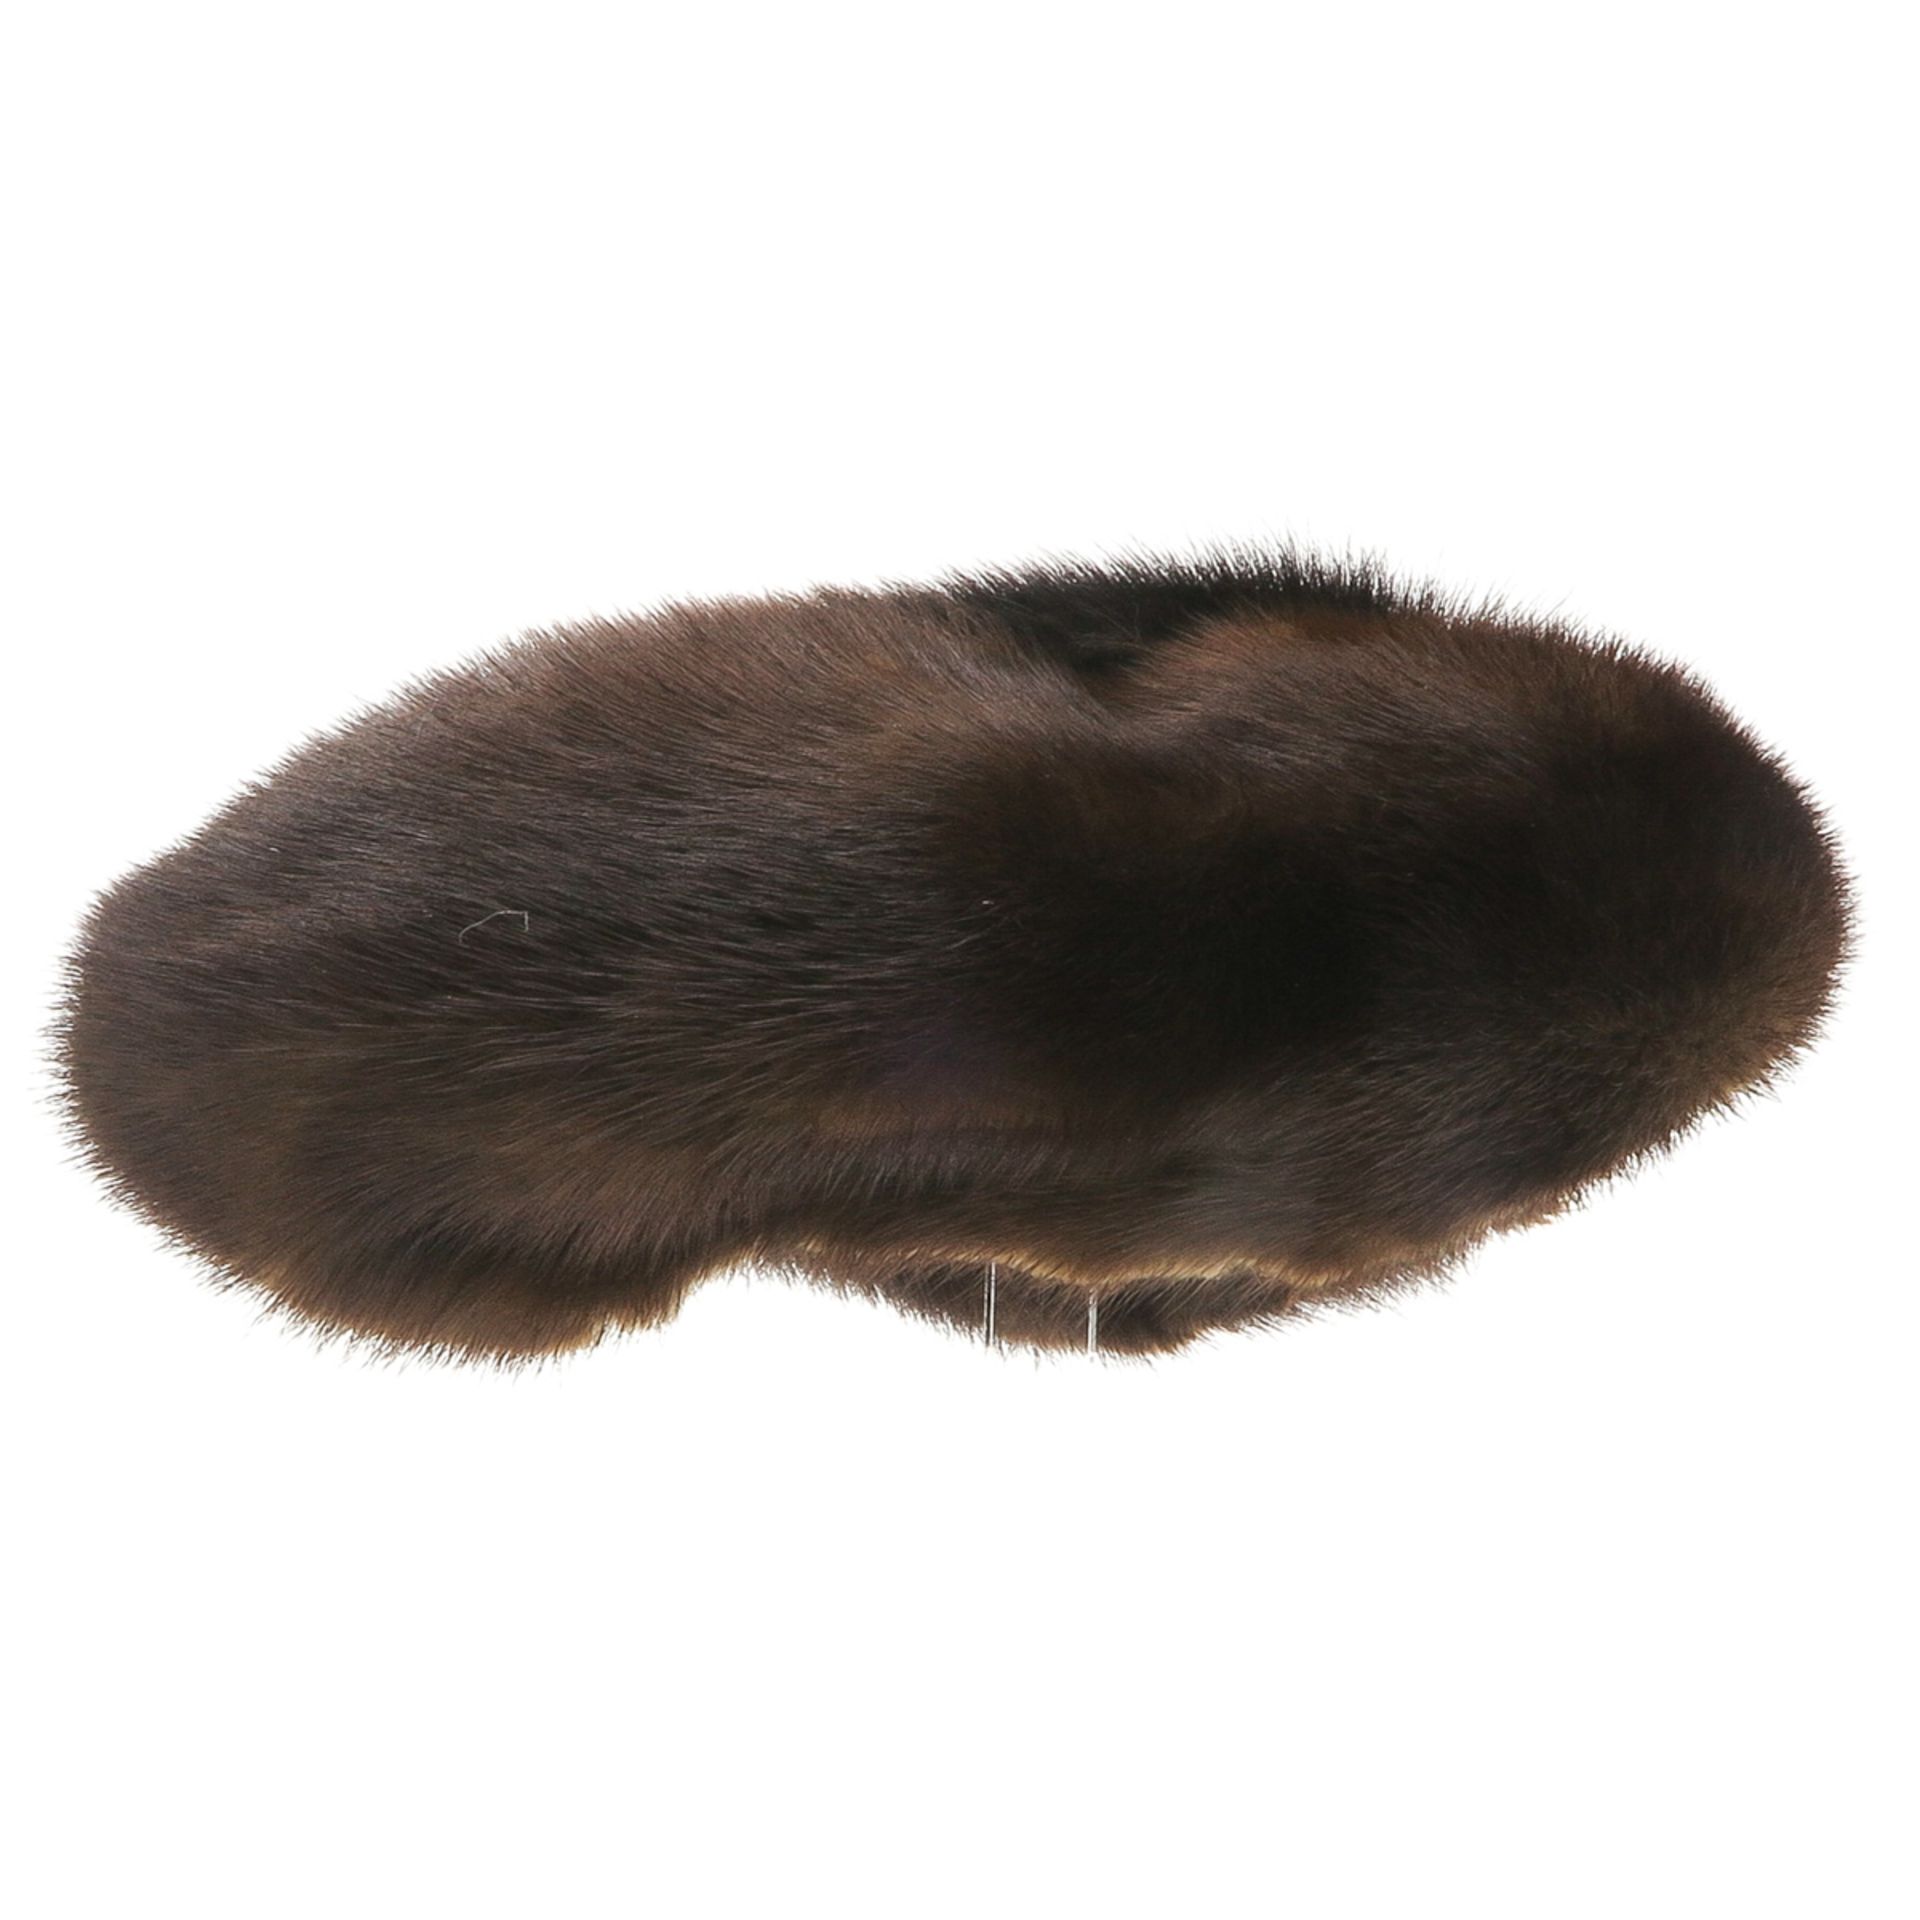 Vintage Fur Hat